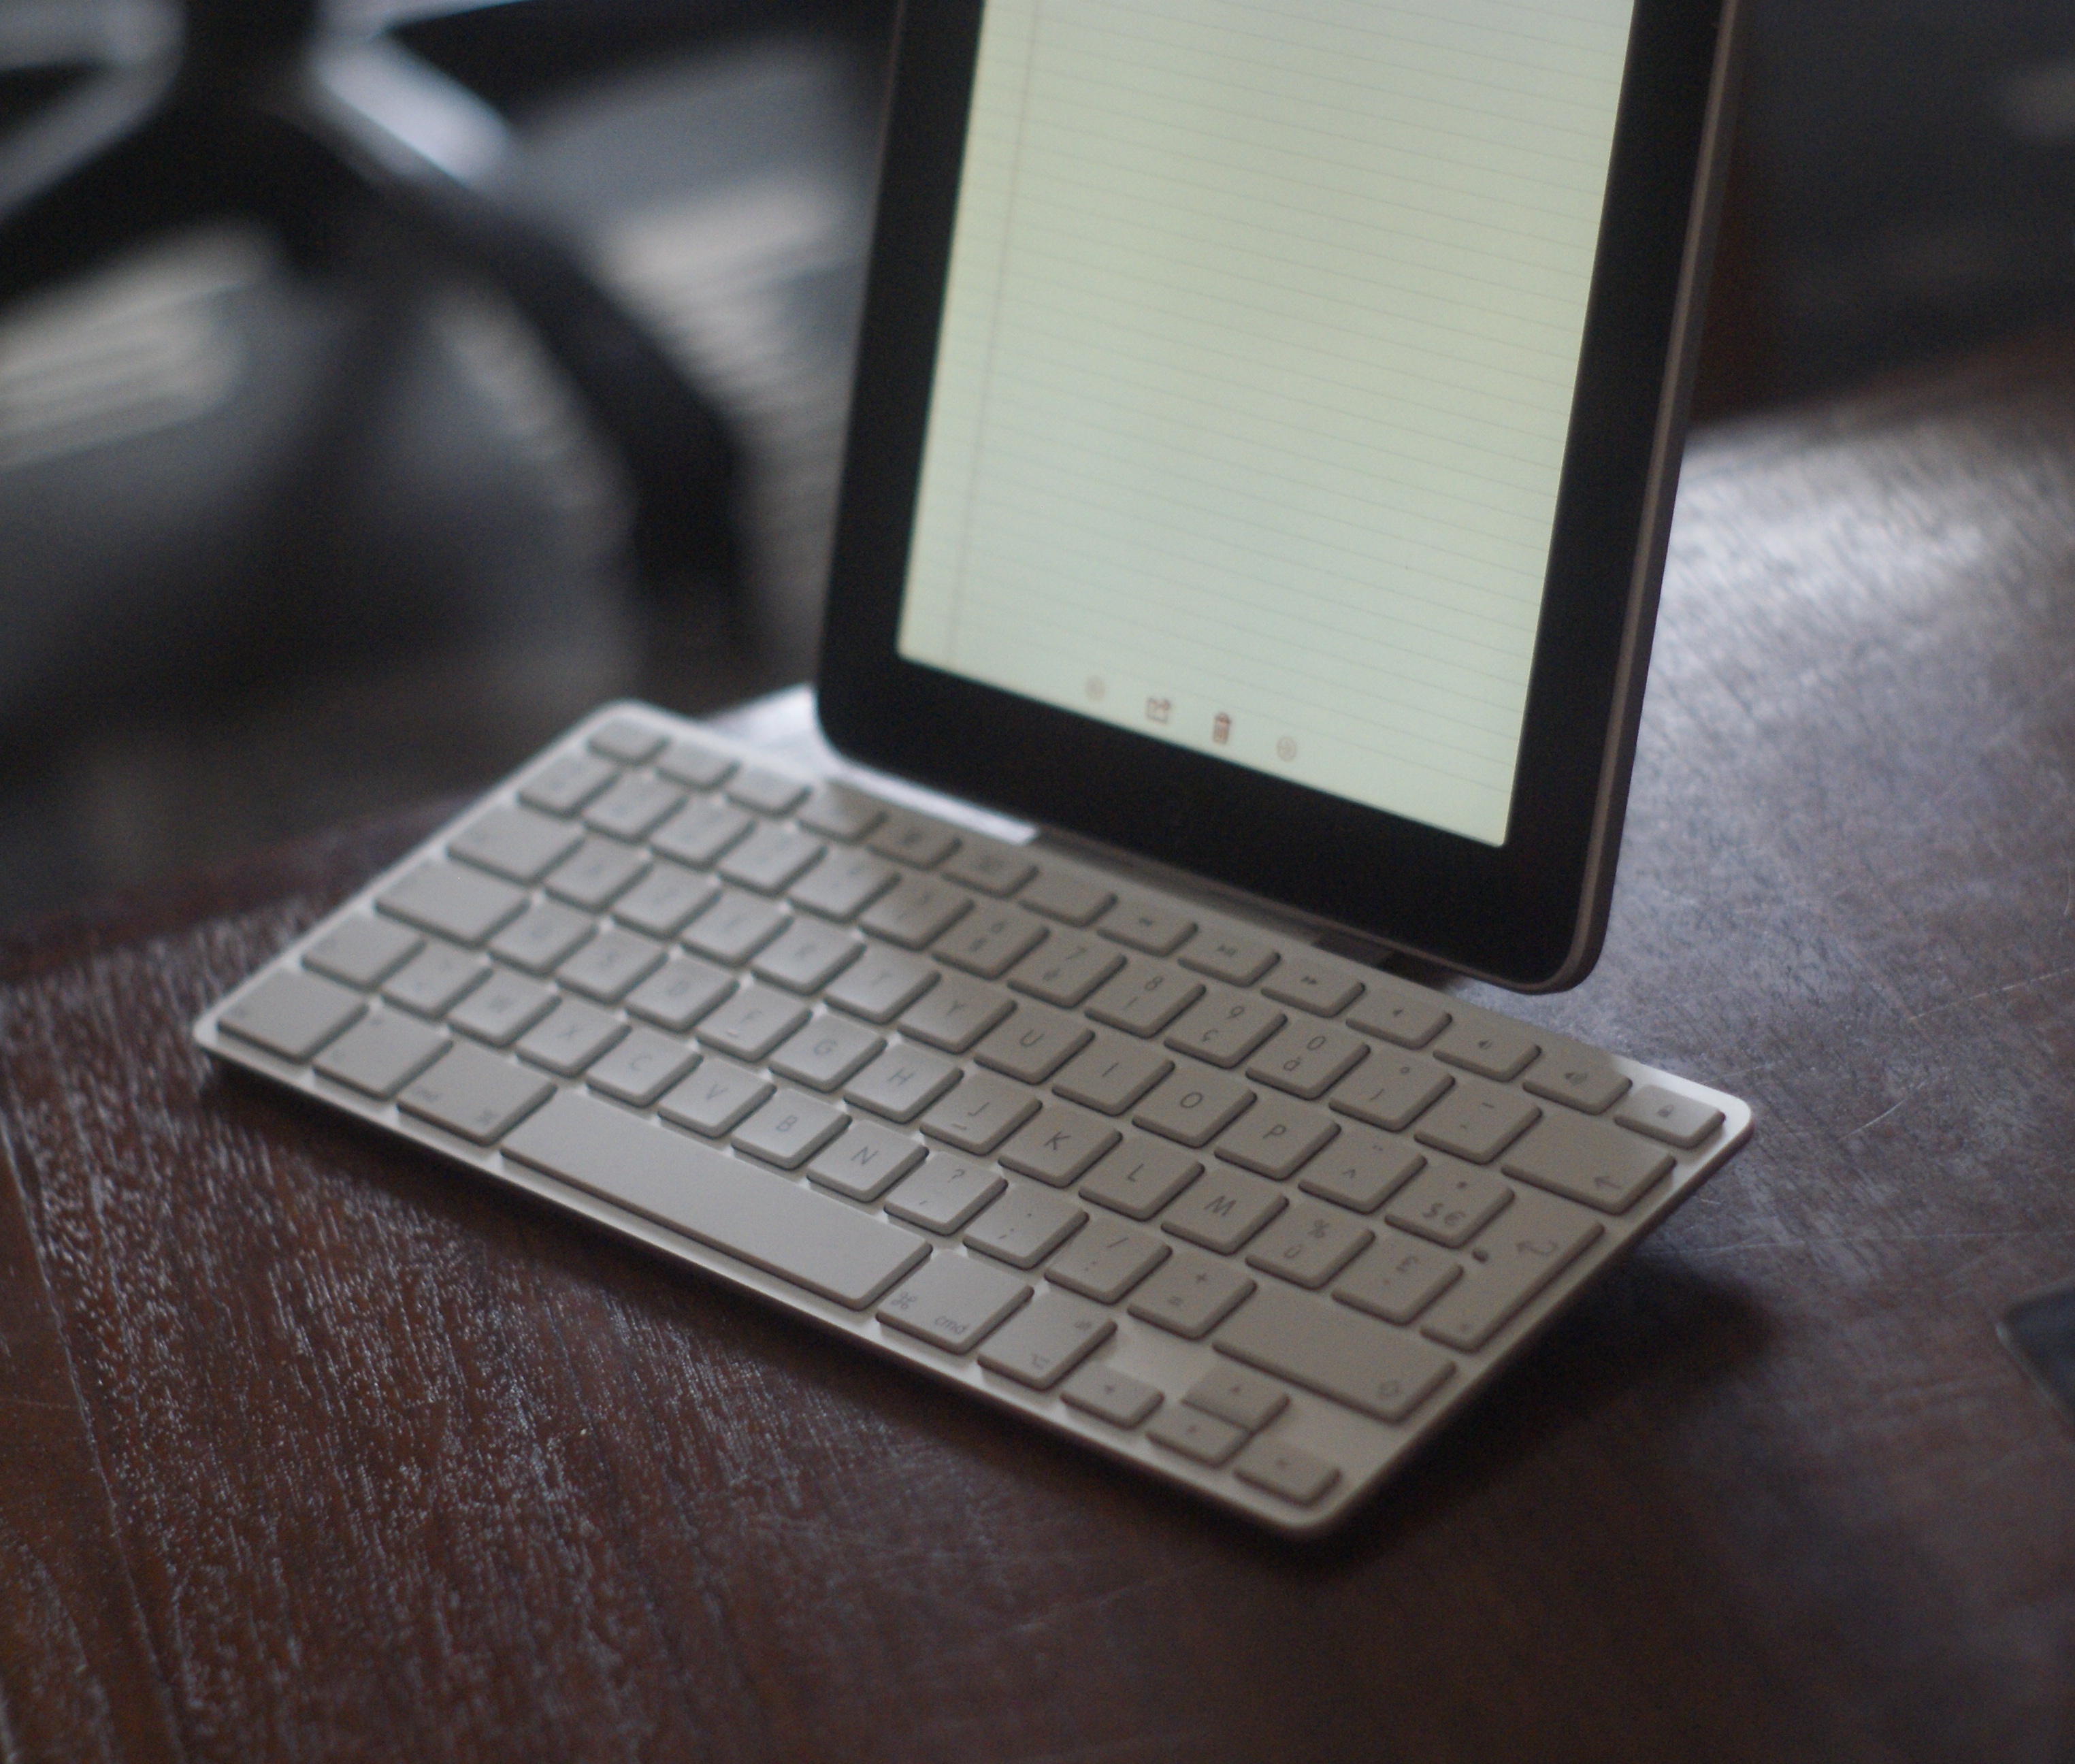 Quand Apple proposait un bon clavier pour iPad – Le journal du lapin